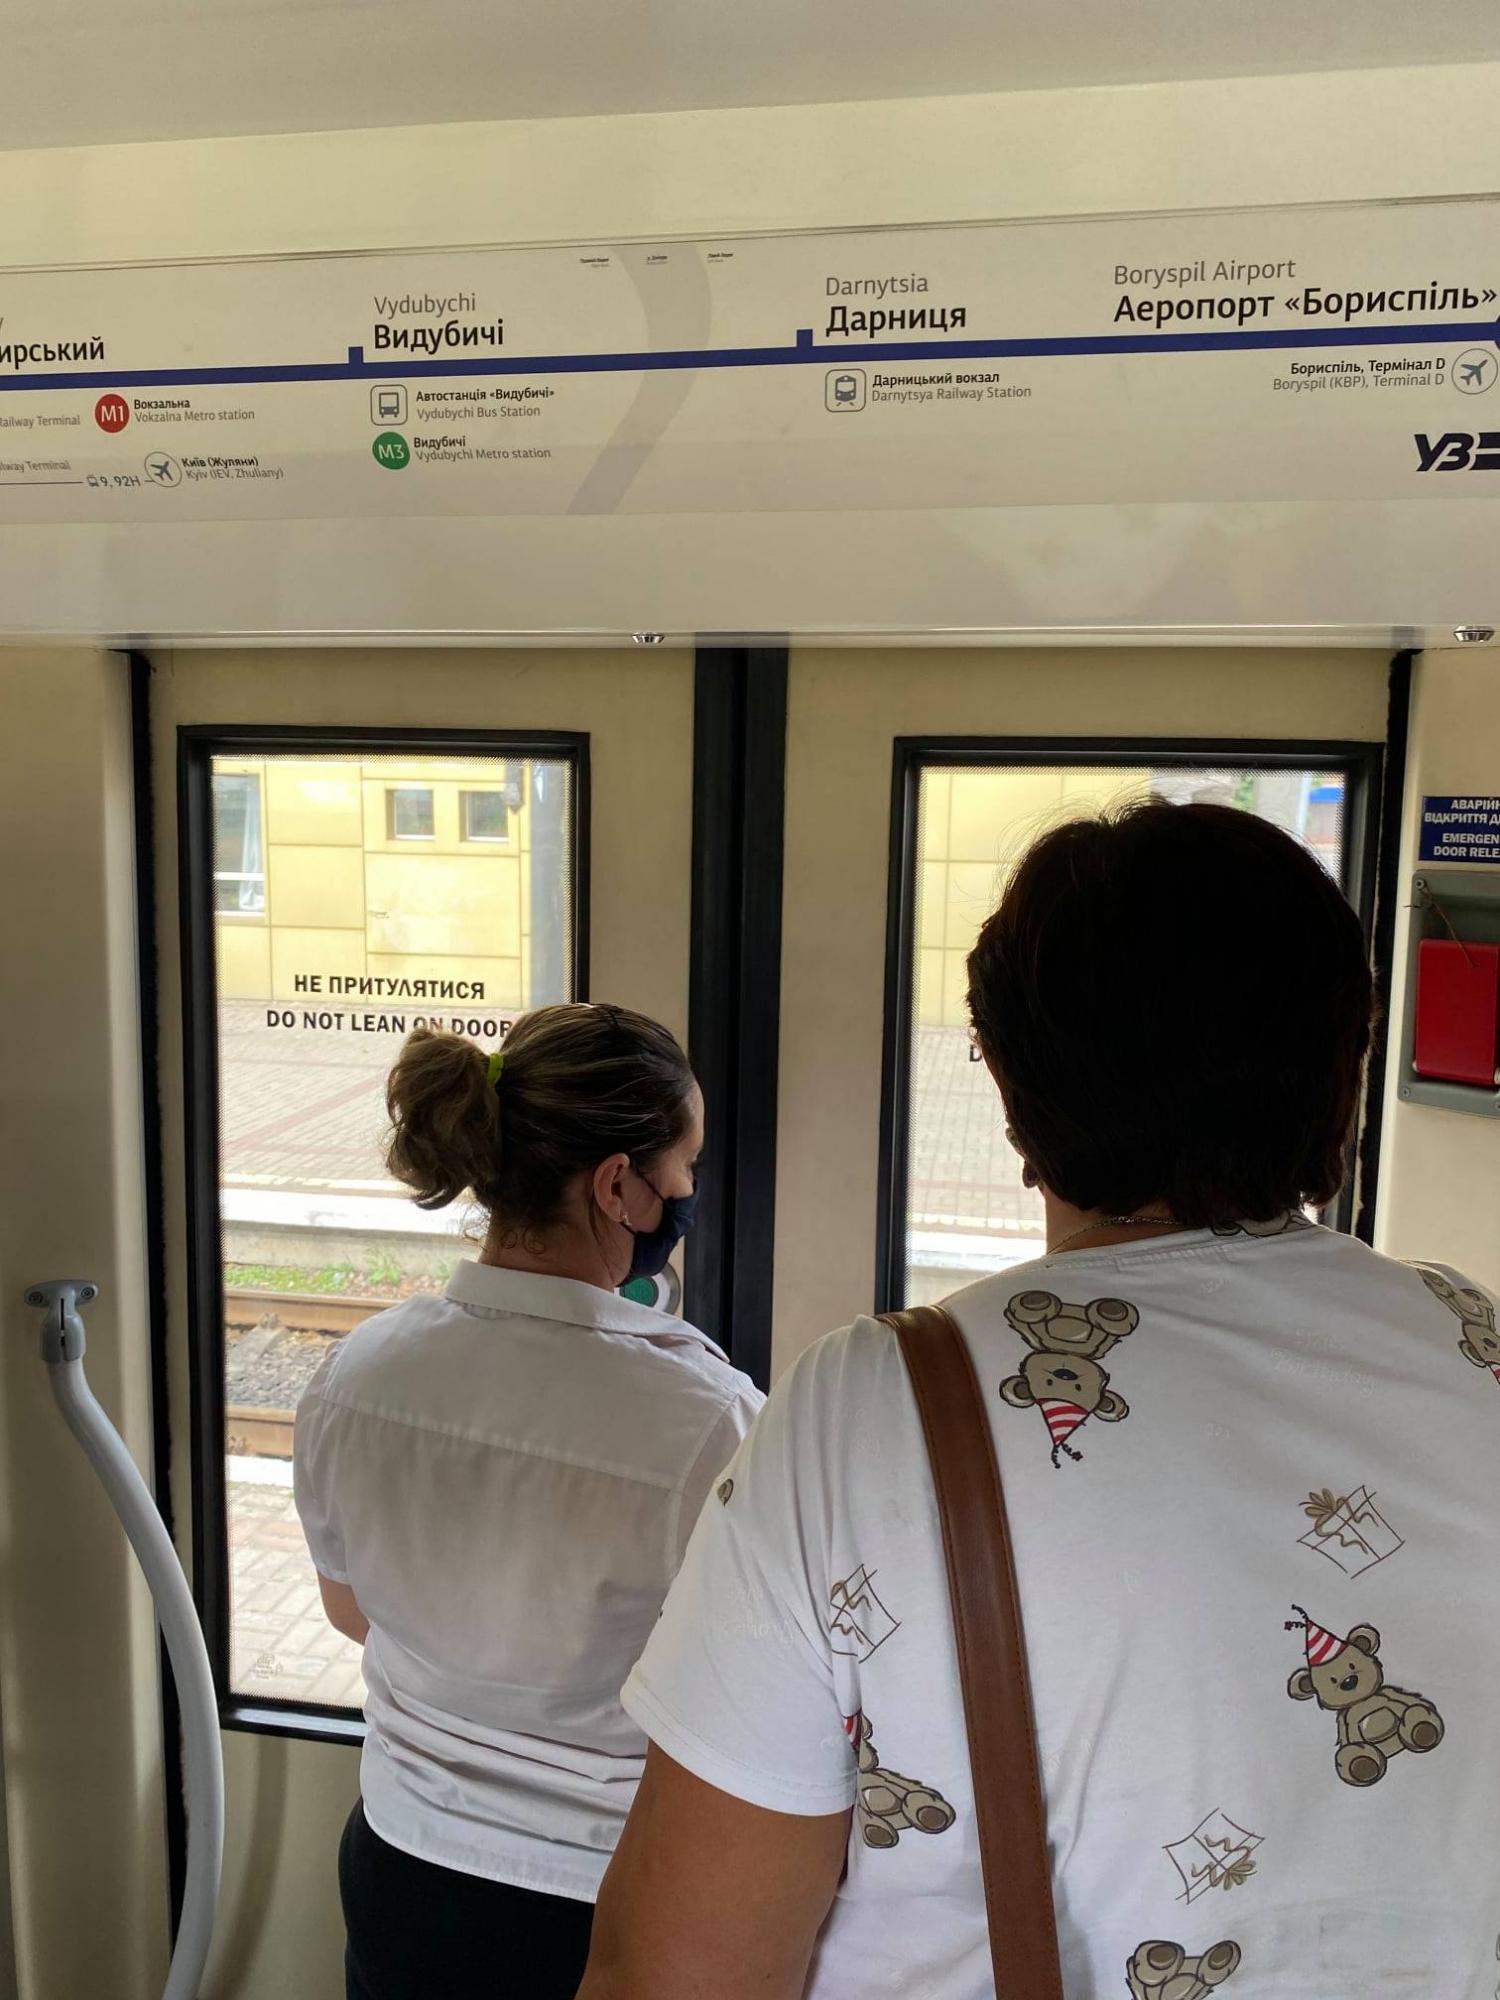 Укрзализныця влипла в очередной скандал: кондукторы берут деньги за проезд себе, не выдавая билеты (фото)